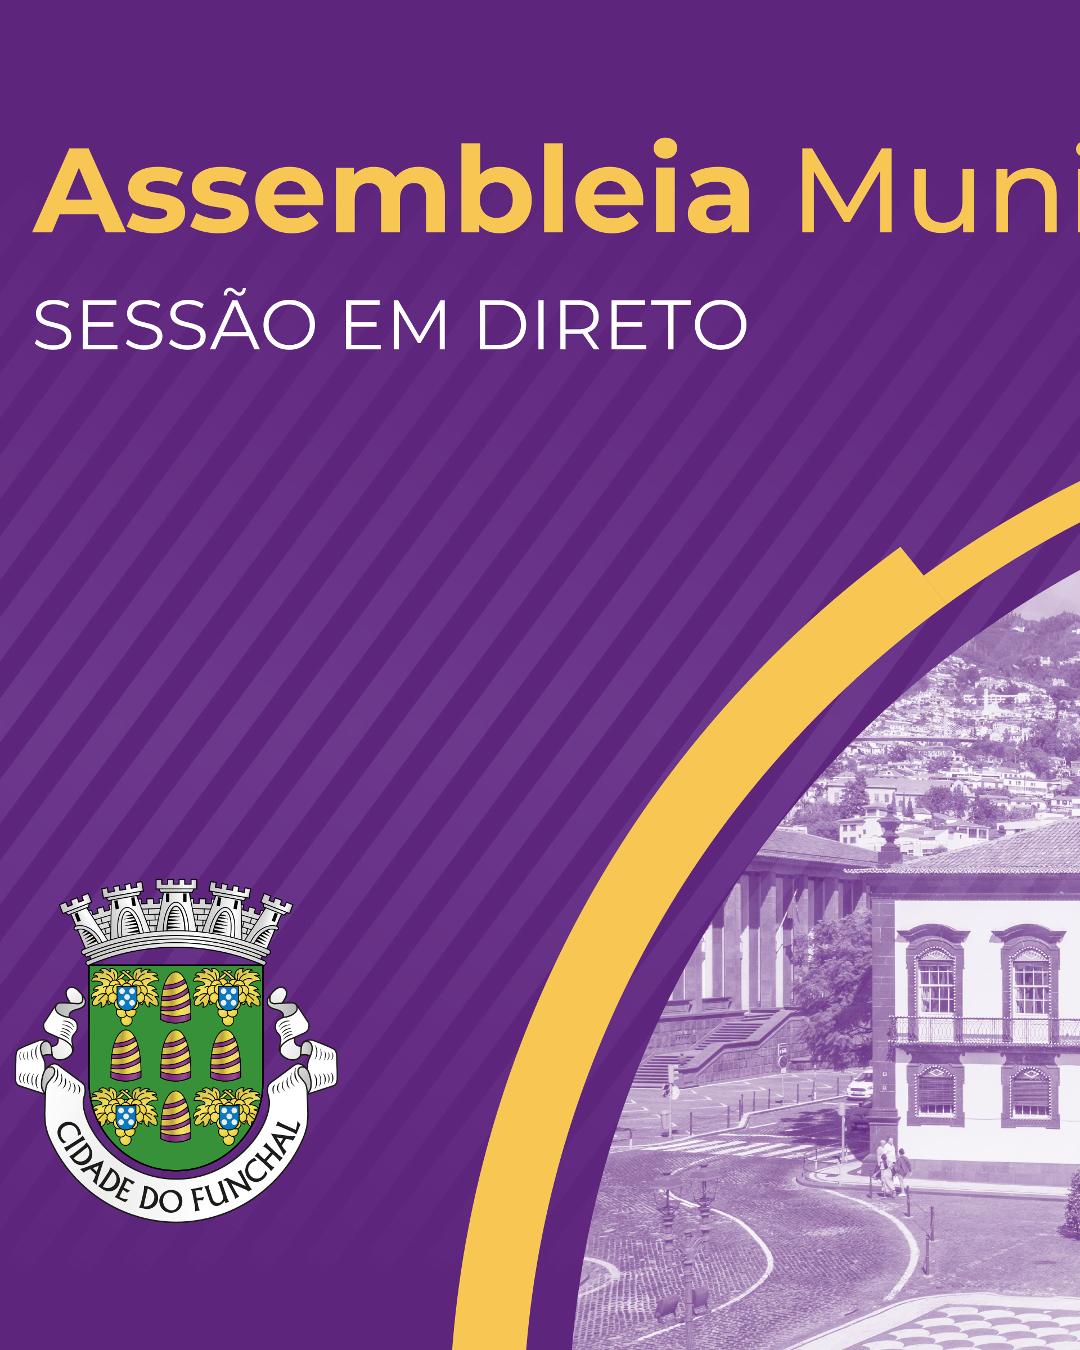 Assembleia Municipal do Funchal | Transmissão em Direto